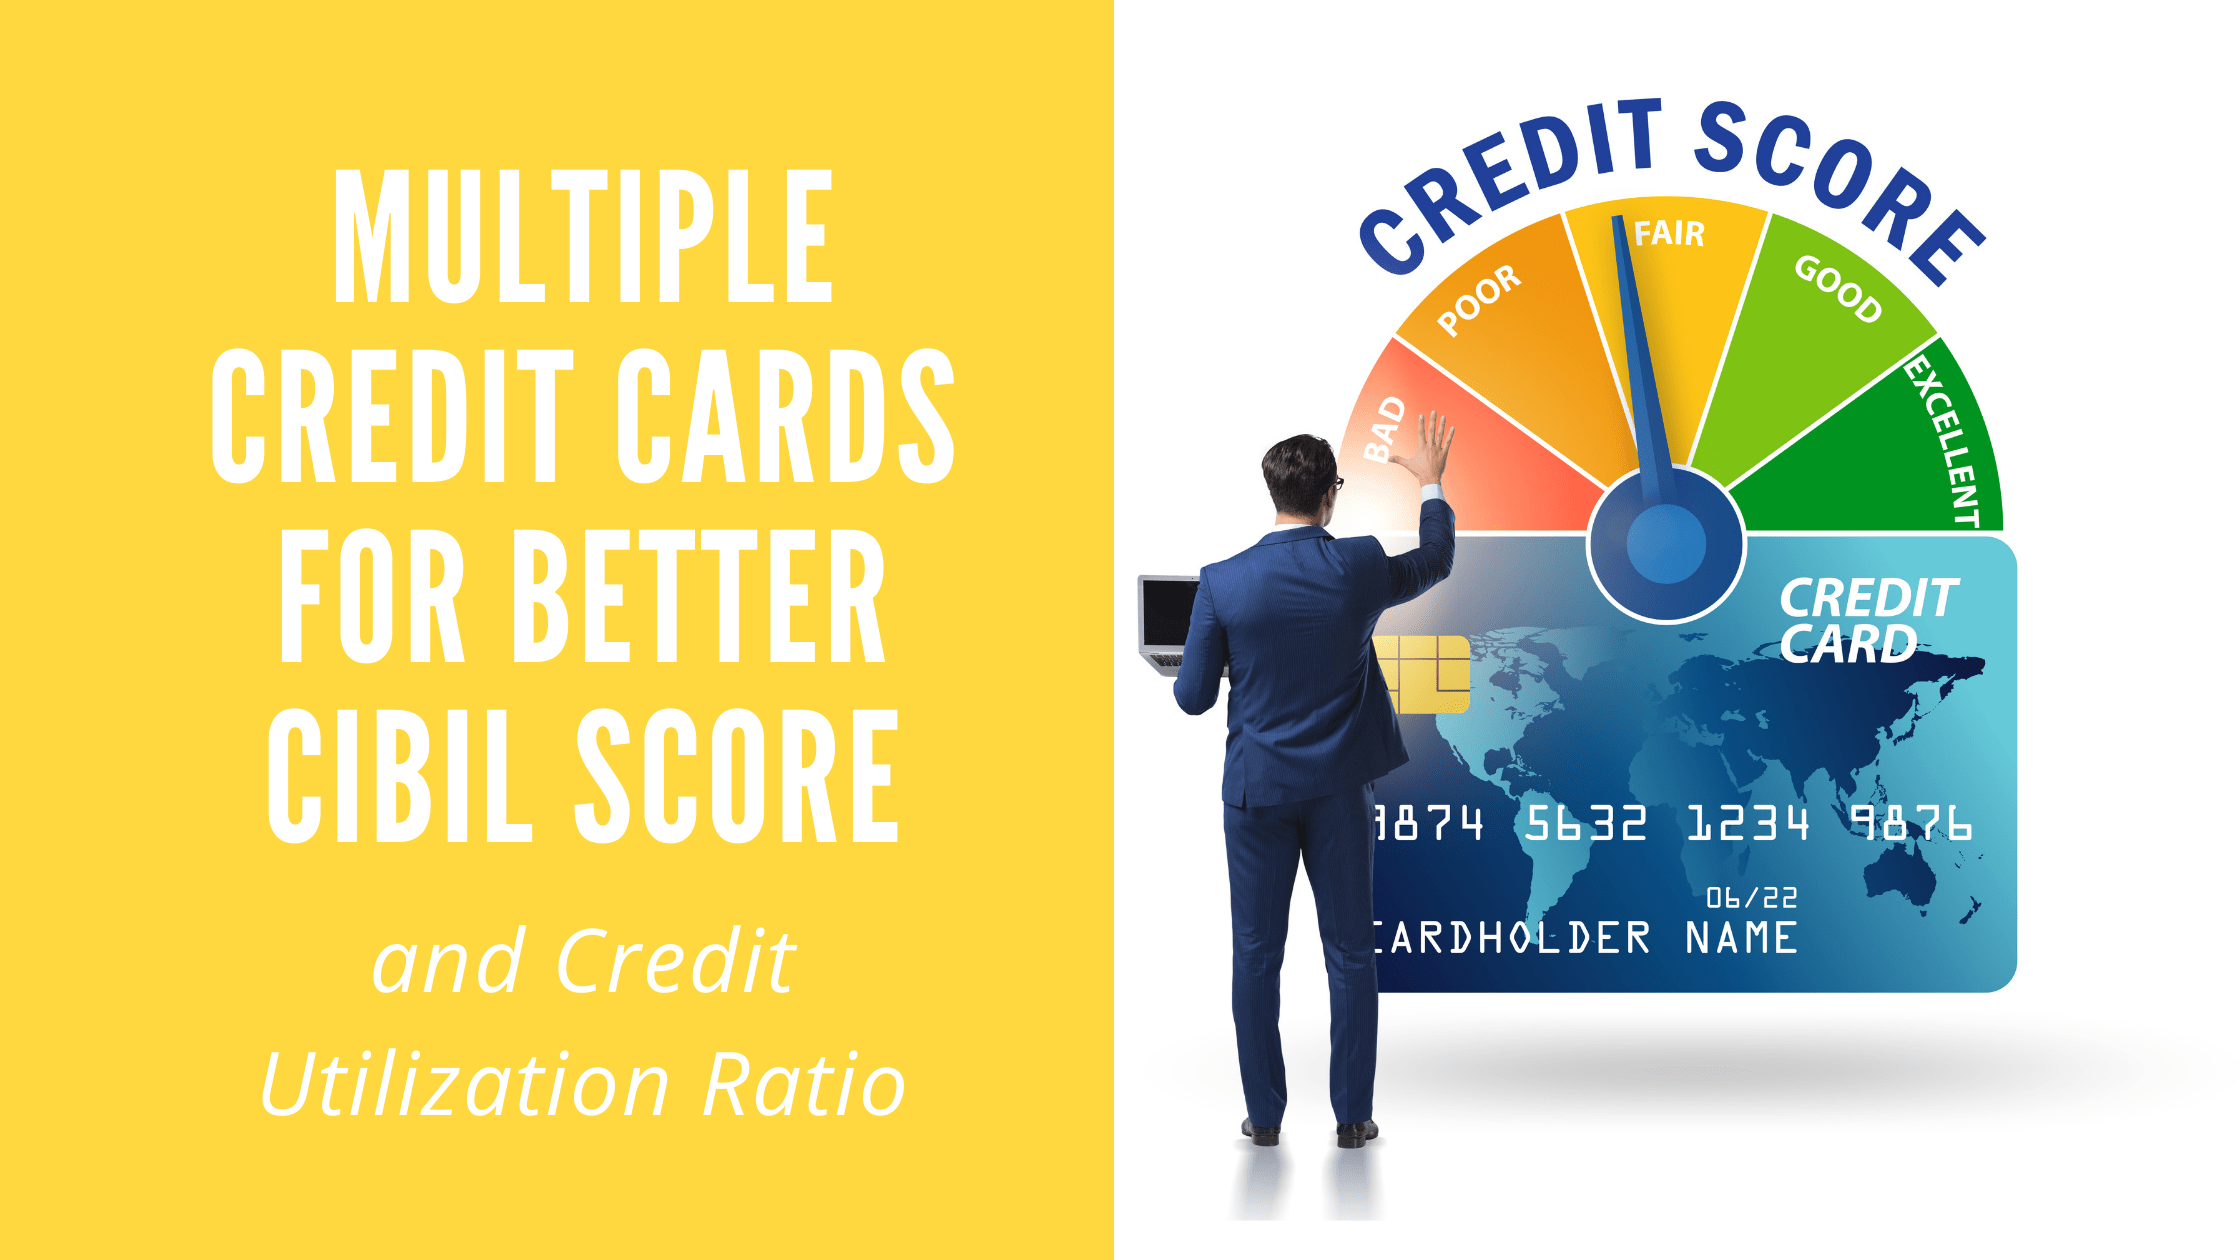 Better CIBIL Score and Credit Utilization Ratio